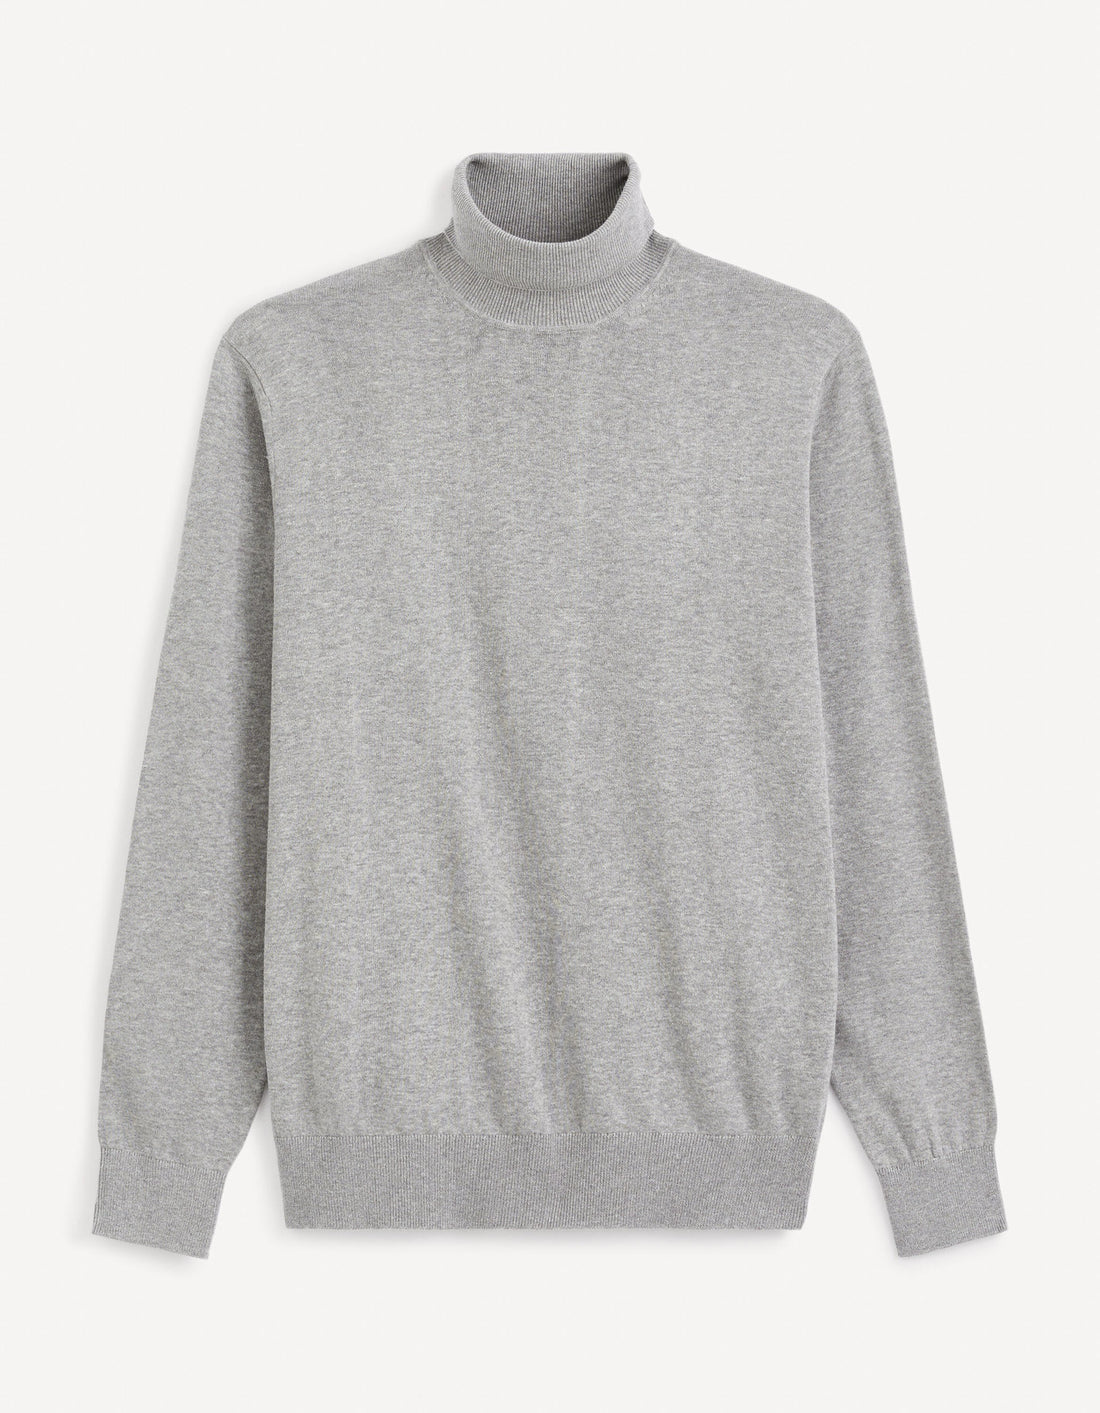 100% Cotton Turtleneck Sweater_FEROLL_GREY MEL_01